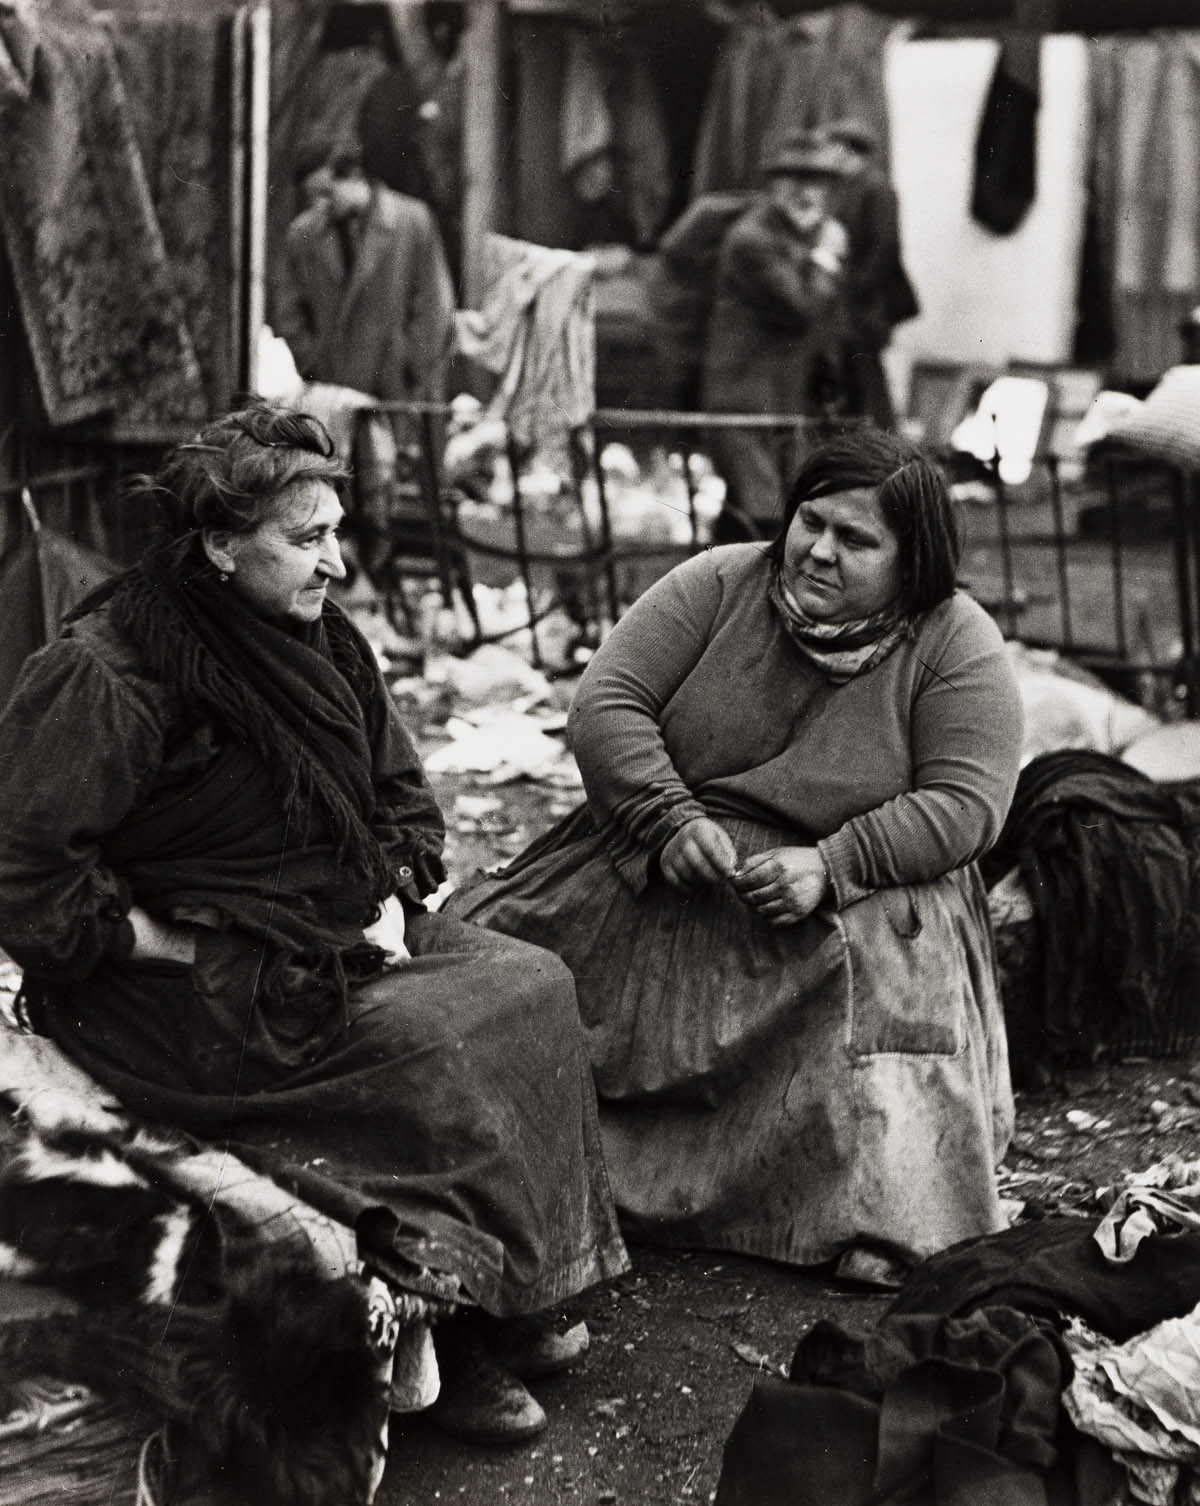 ANDRÉ KERTÉSZ (1894-1985) Two women talking in the flea market.